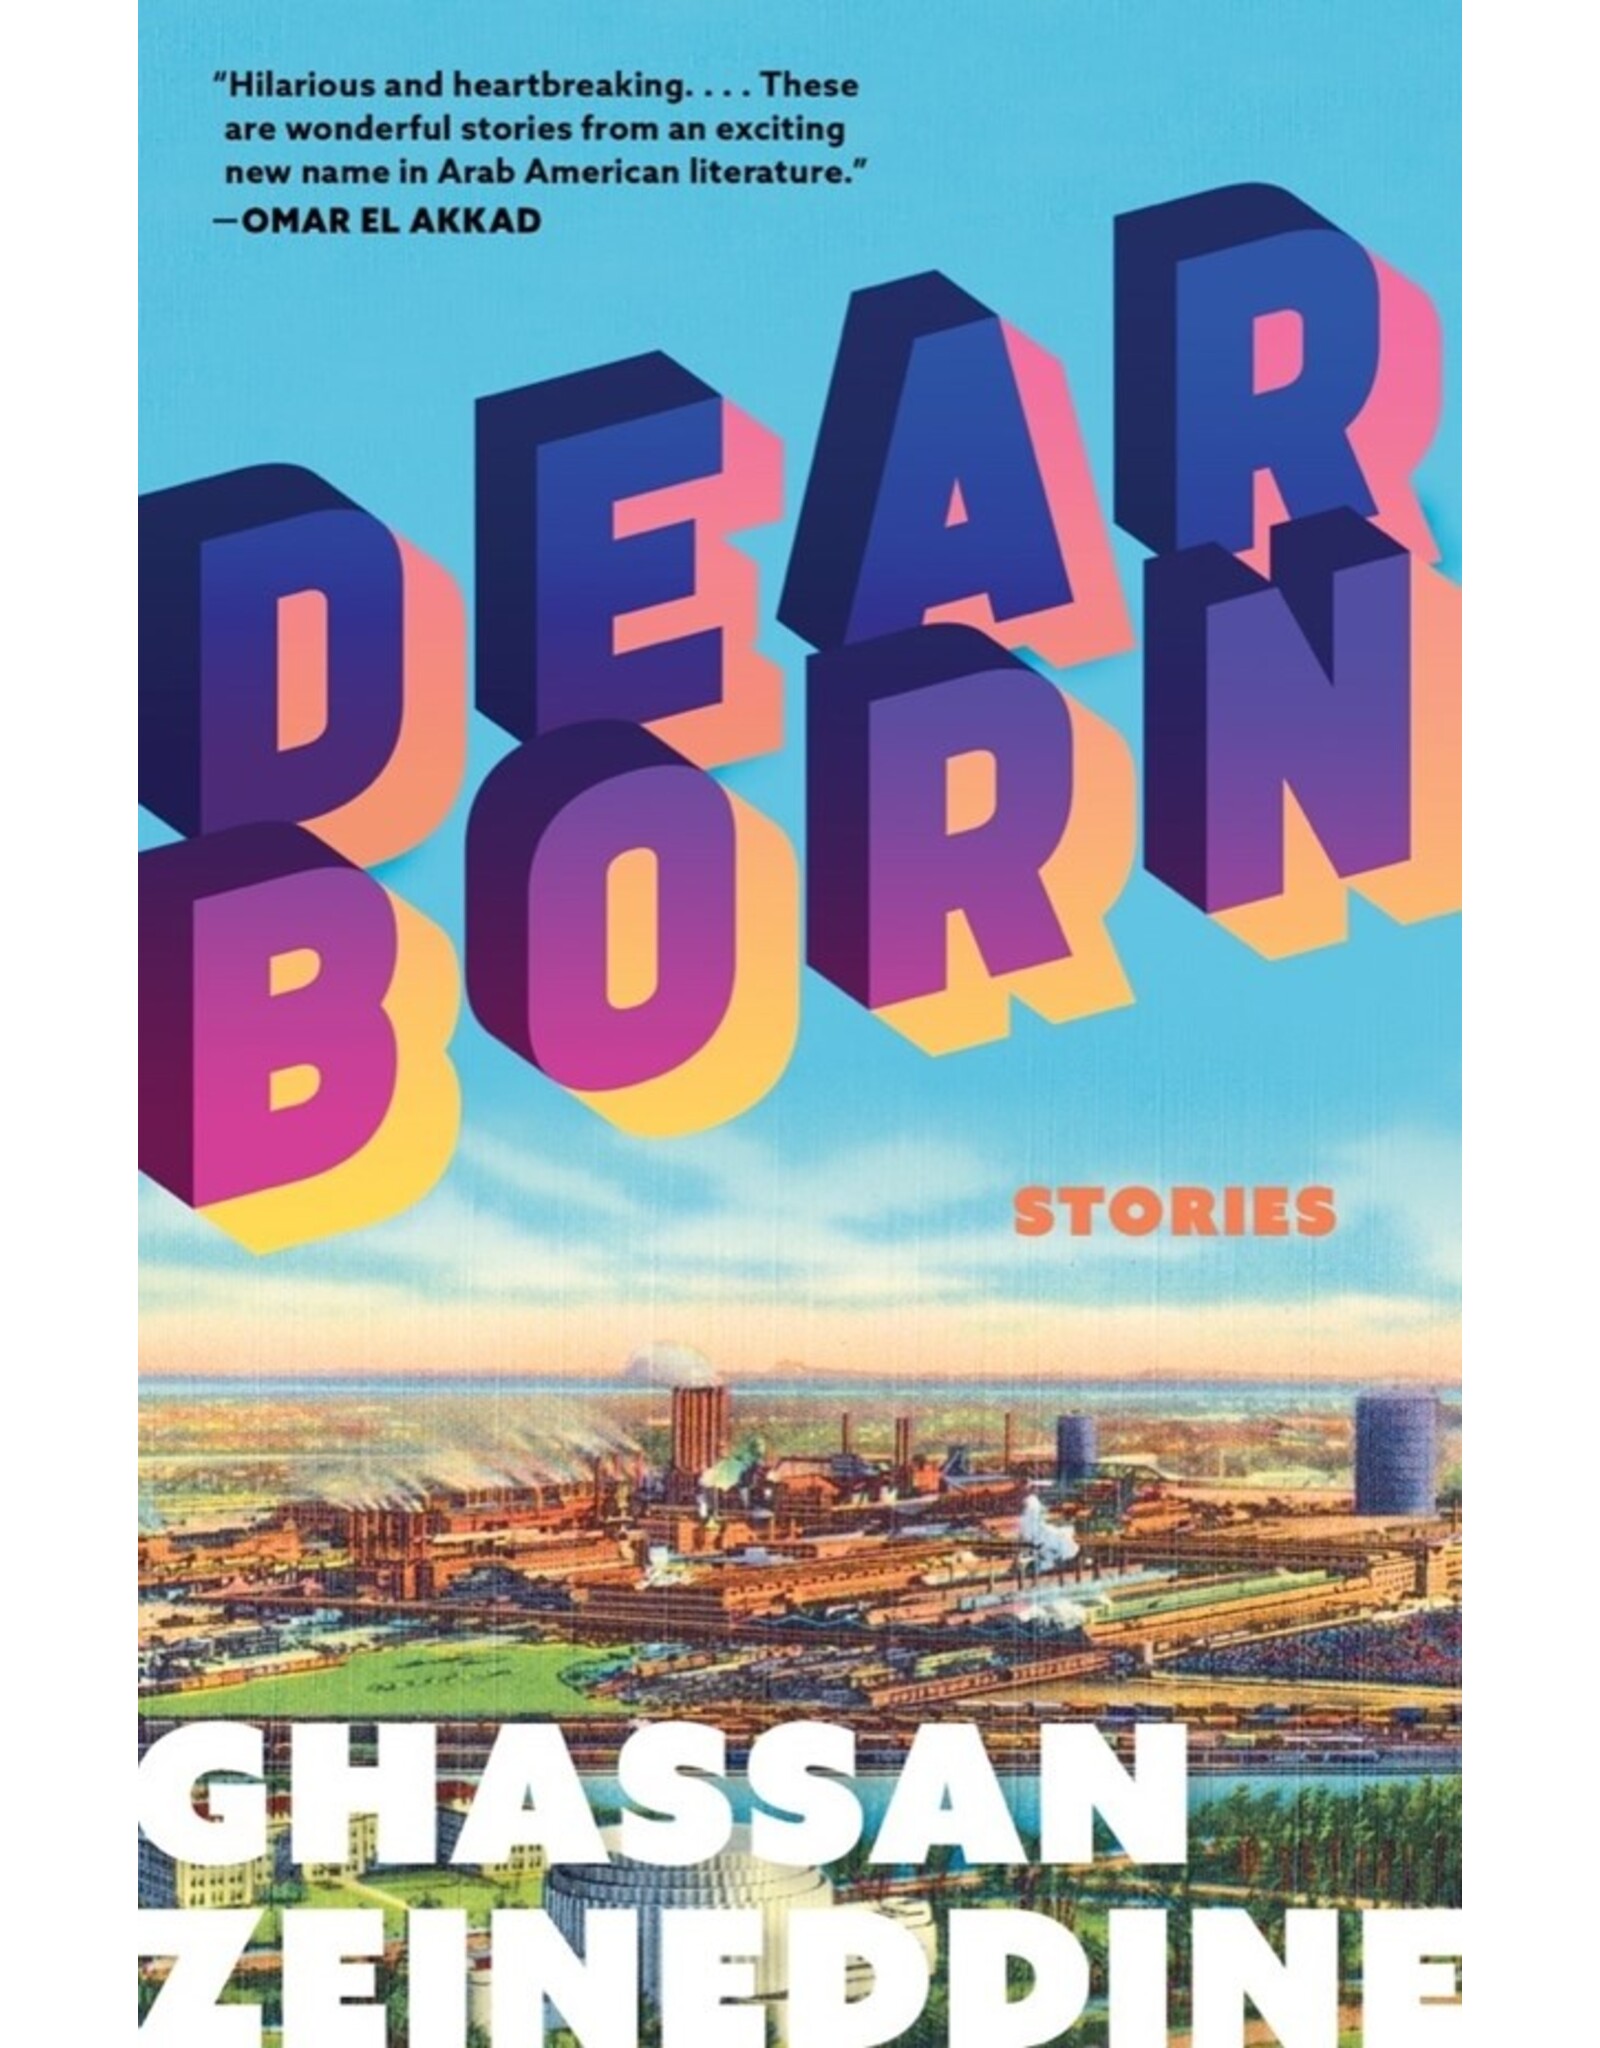 Books DEARBORN  Stories by Ghassan Zeineddine